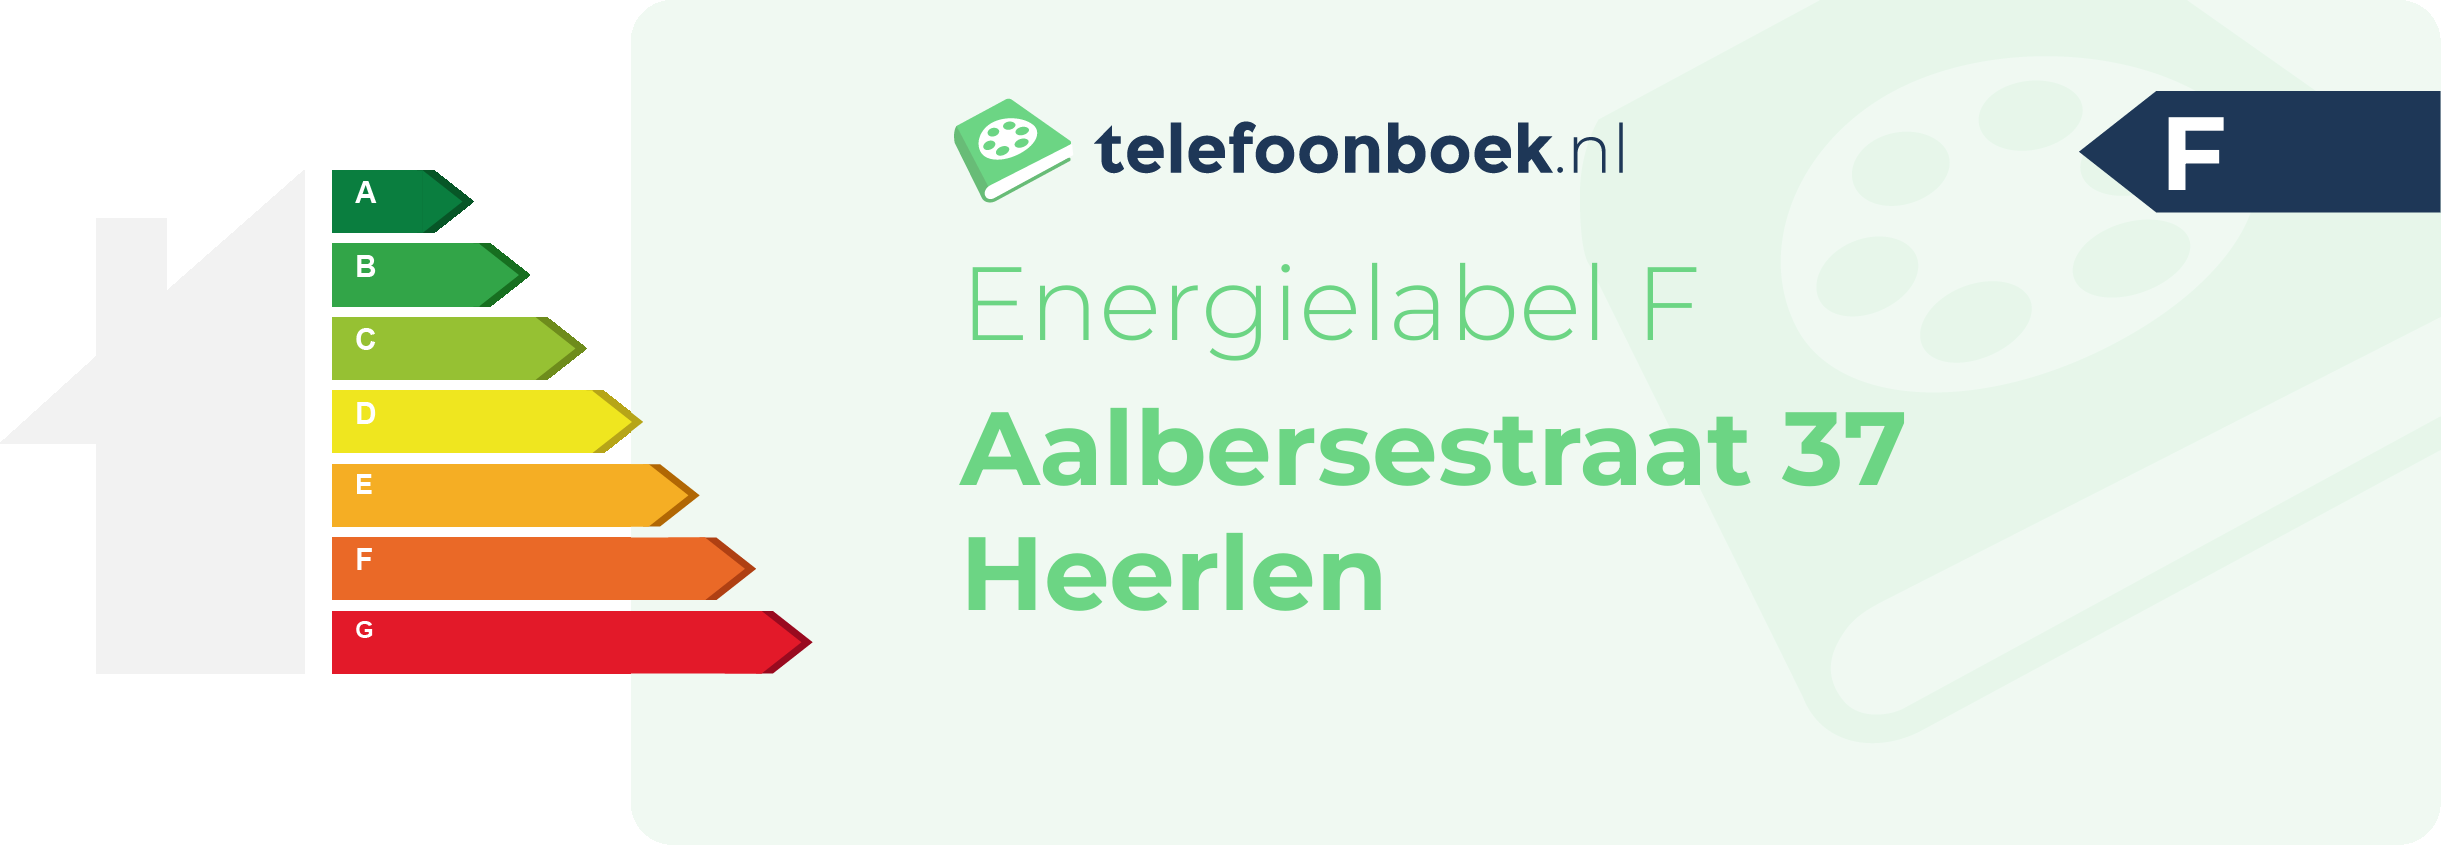 Energielabel Aalbersestraat 37 Heerlen